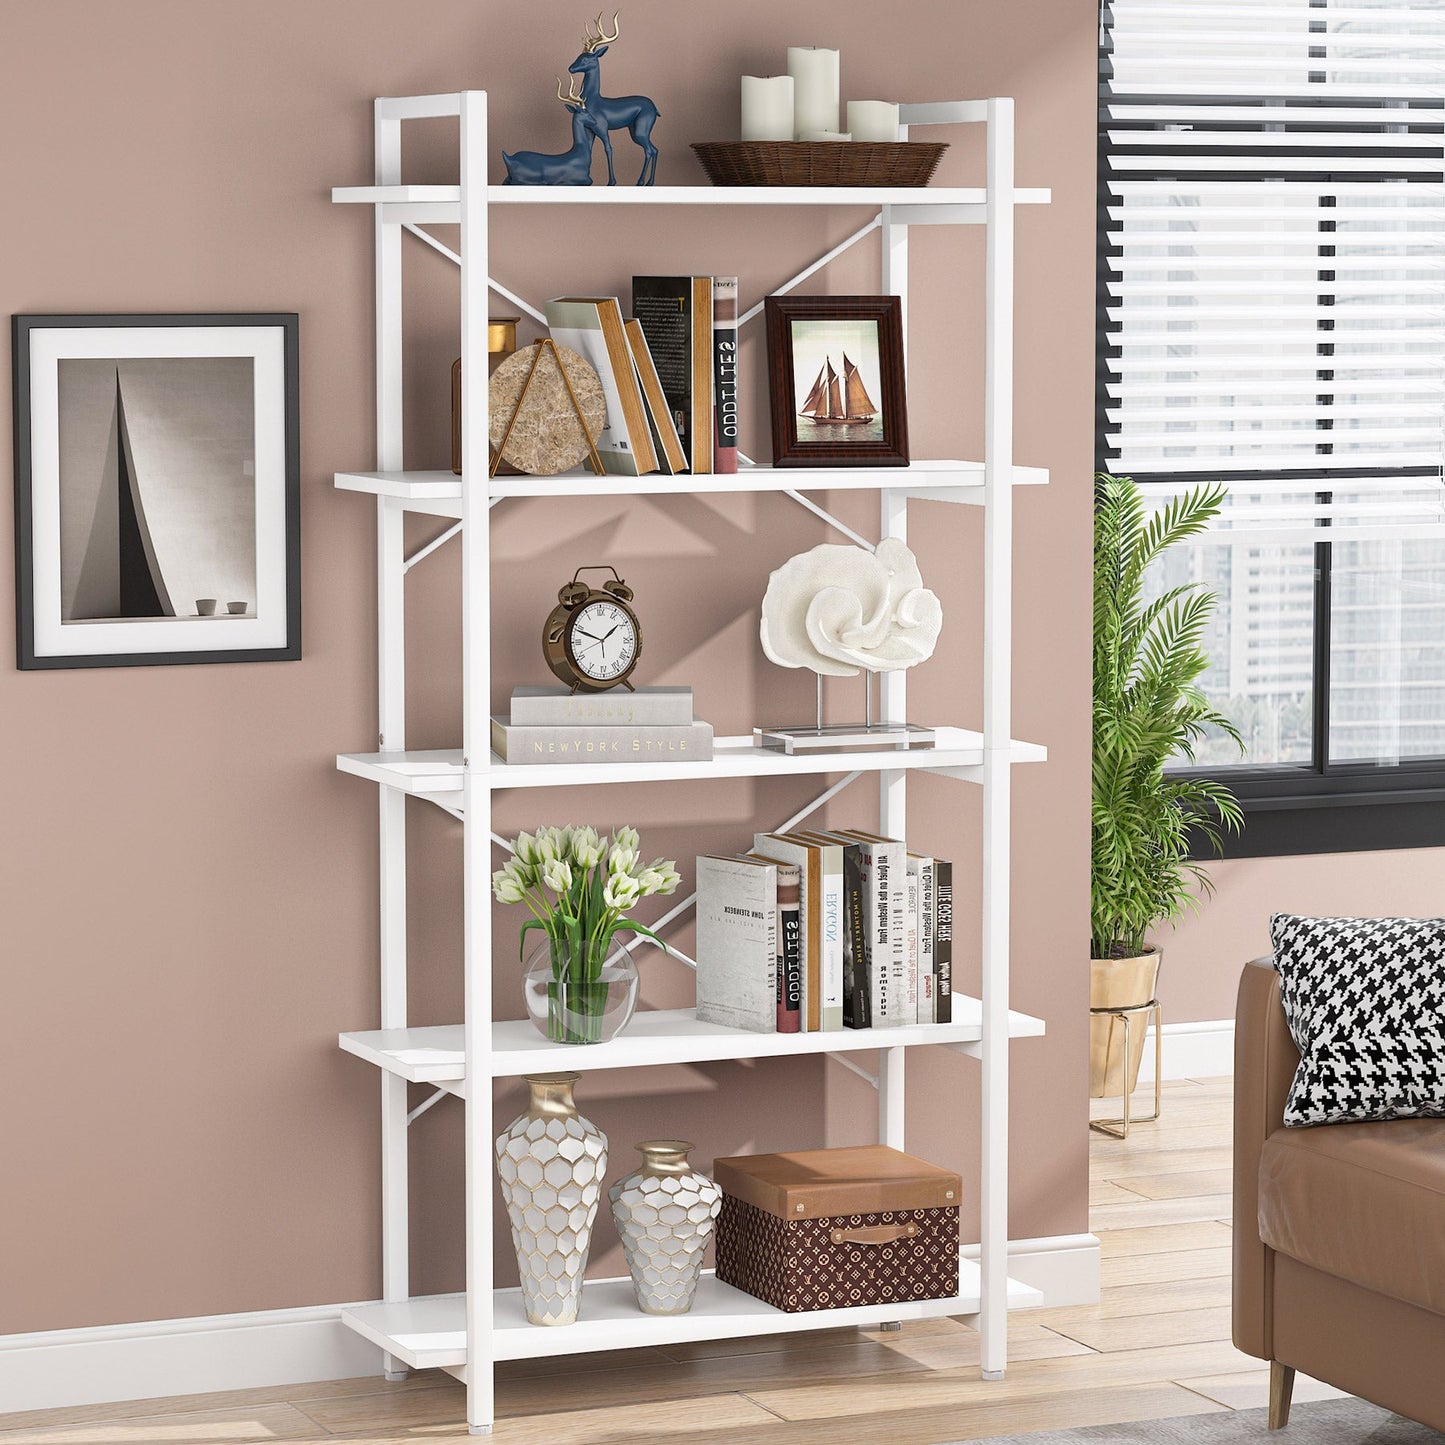 Tribesigns - Bücherregal, 5 Ebenen, weißes Bücherregal mit Metallrahmen, modernes hohes Bücherregal für Wohnzimmer, Arbeitszimmer, Home Office, weiß